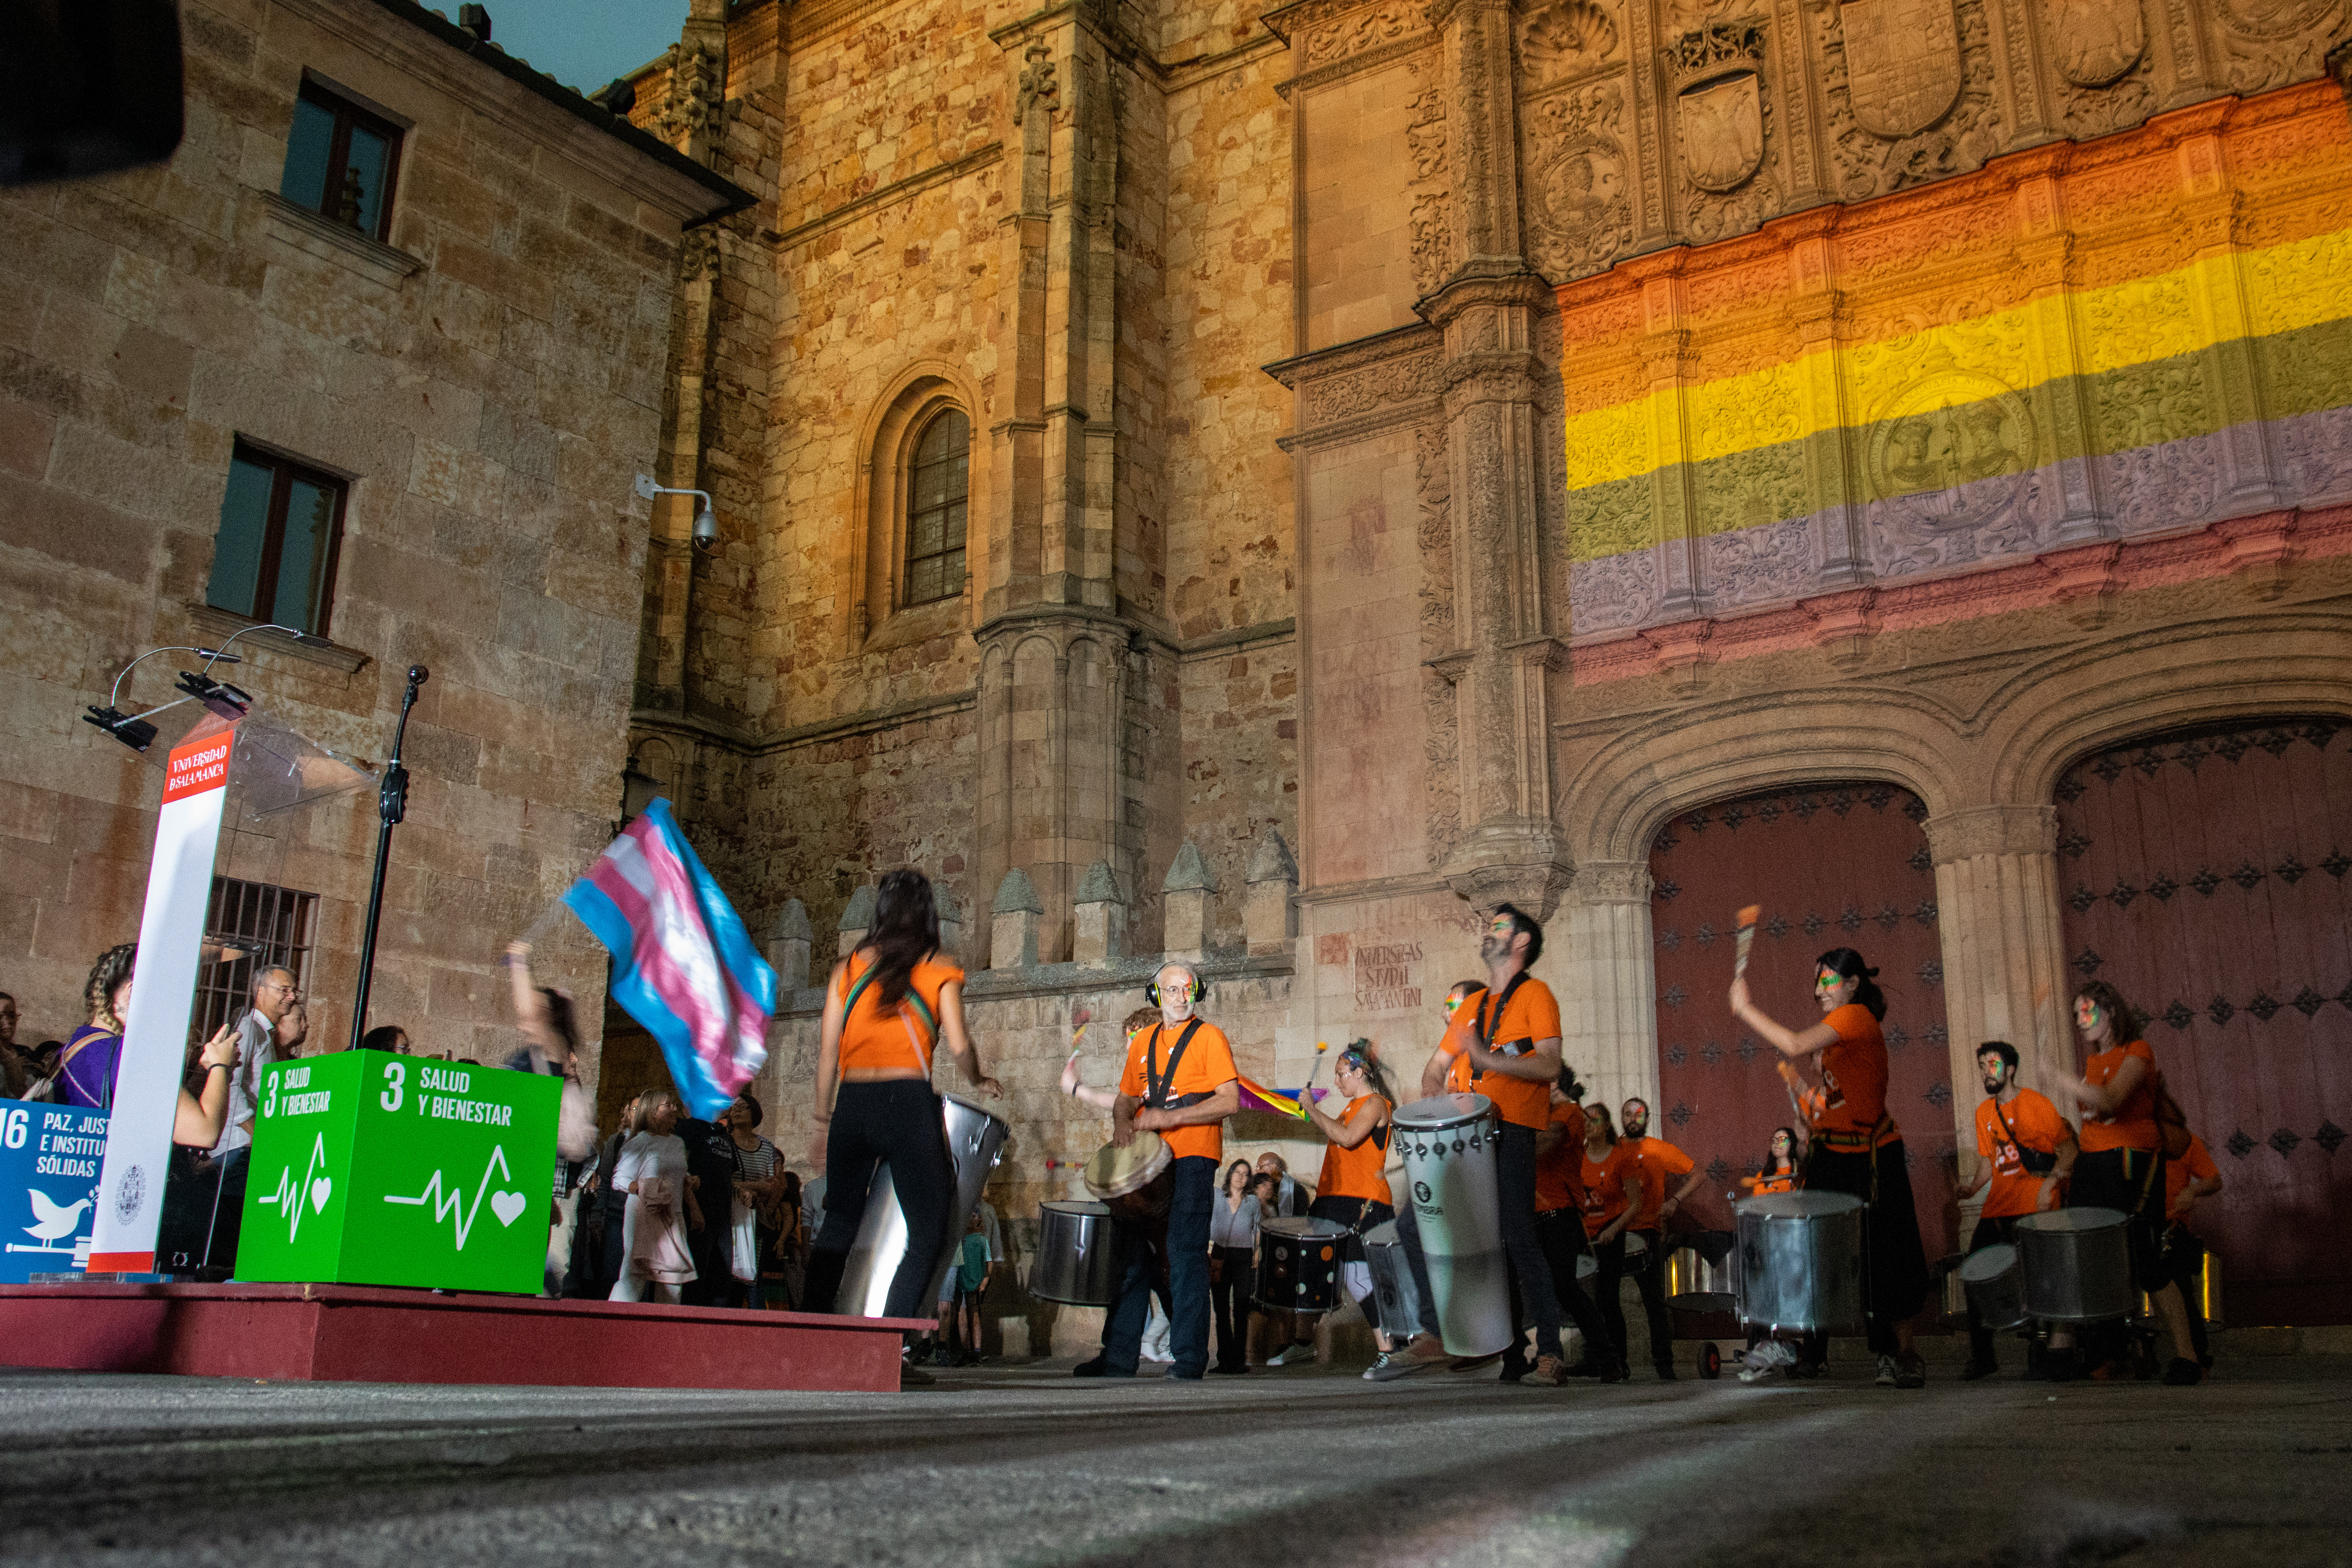 La Universidad de Salamanca celebra el Día Internacional del Orgullo LGTBIQ+ con actividades festivas y reivindicativas